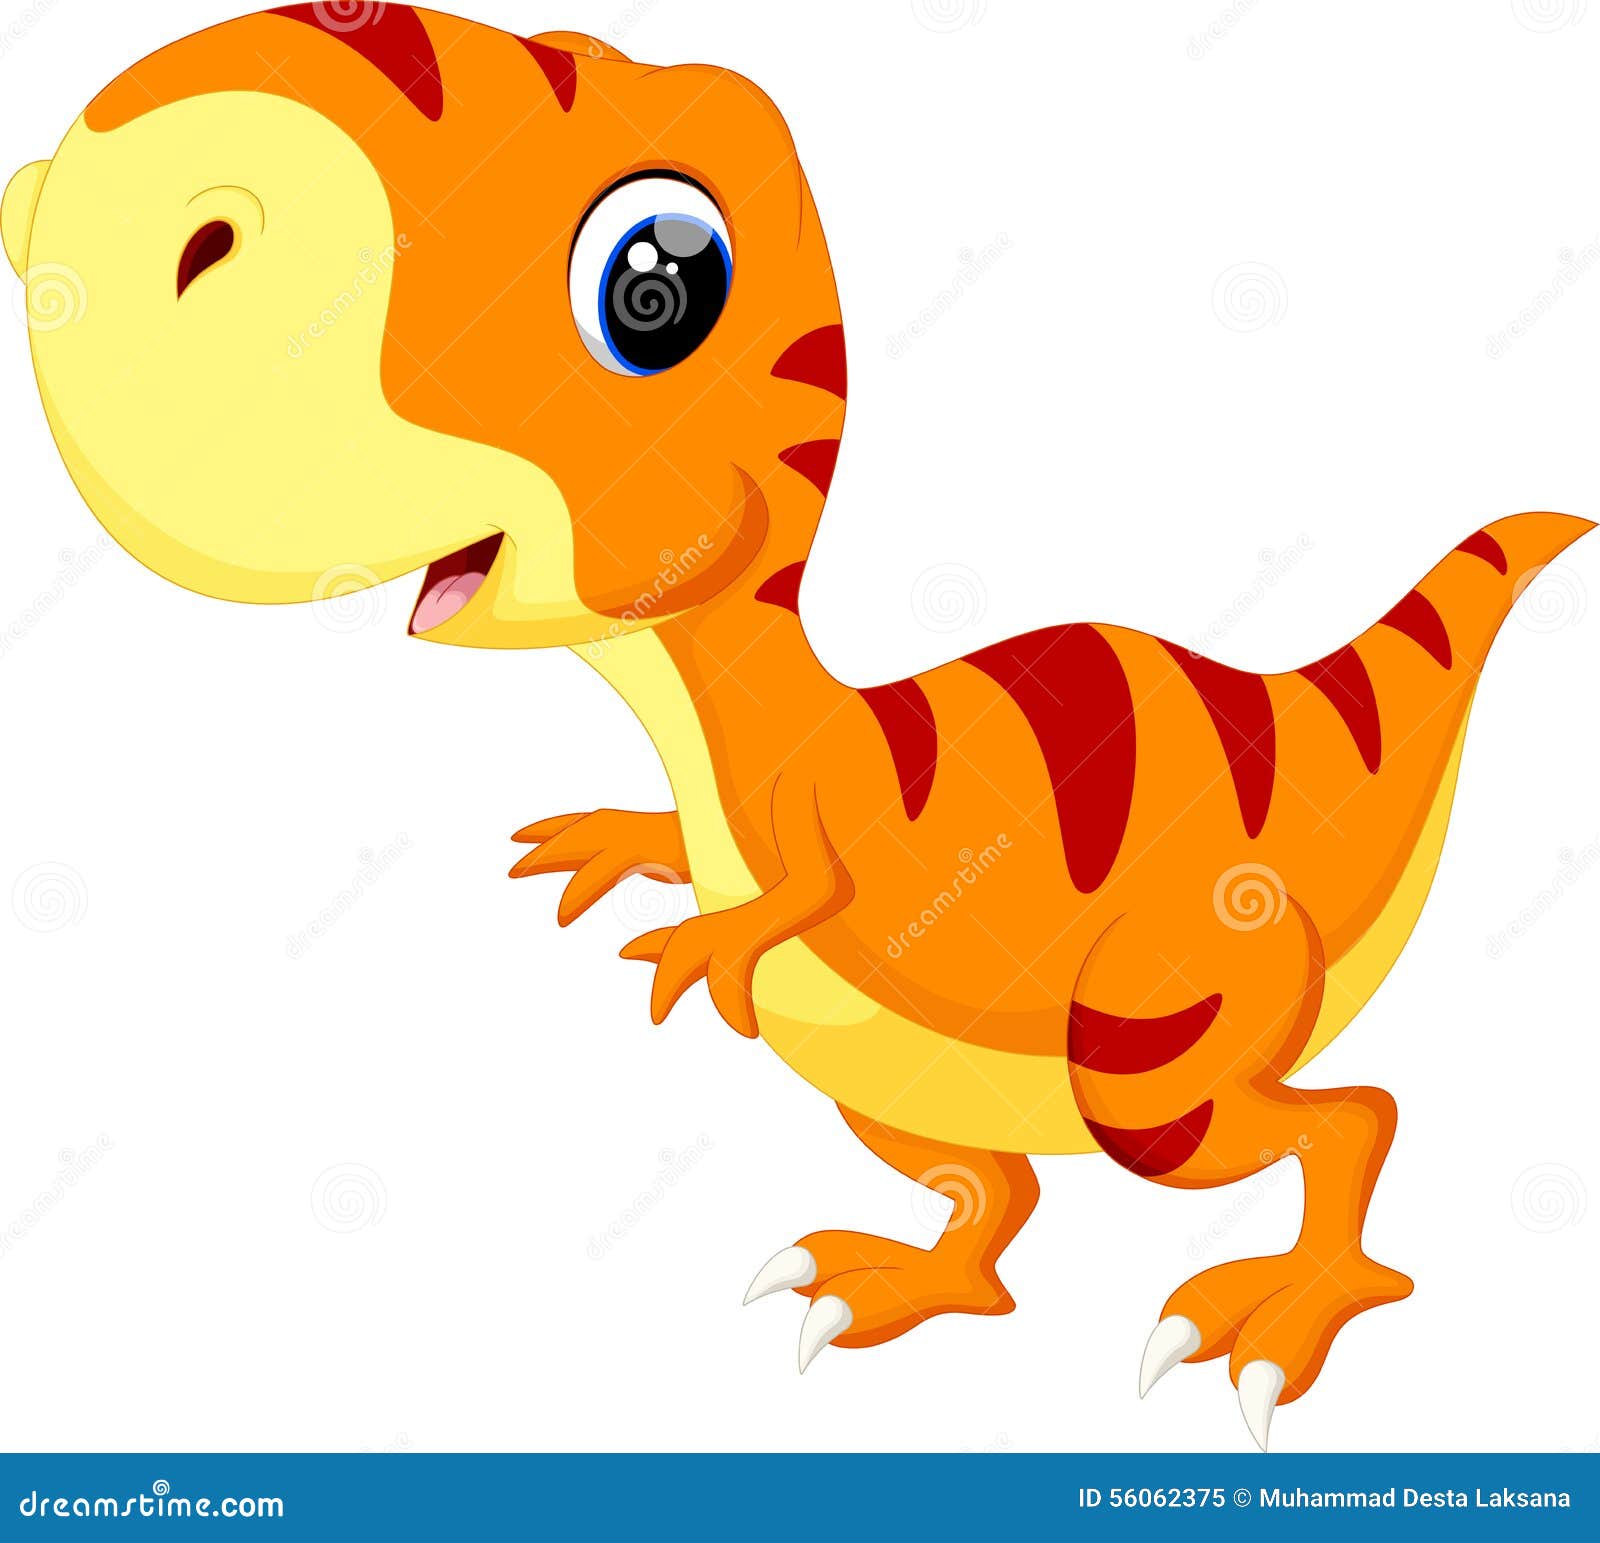 Cute baby dinosaur cartoon stock illustration. Illustration of cute -  56062375